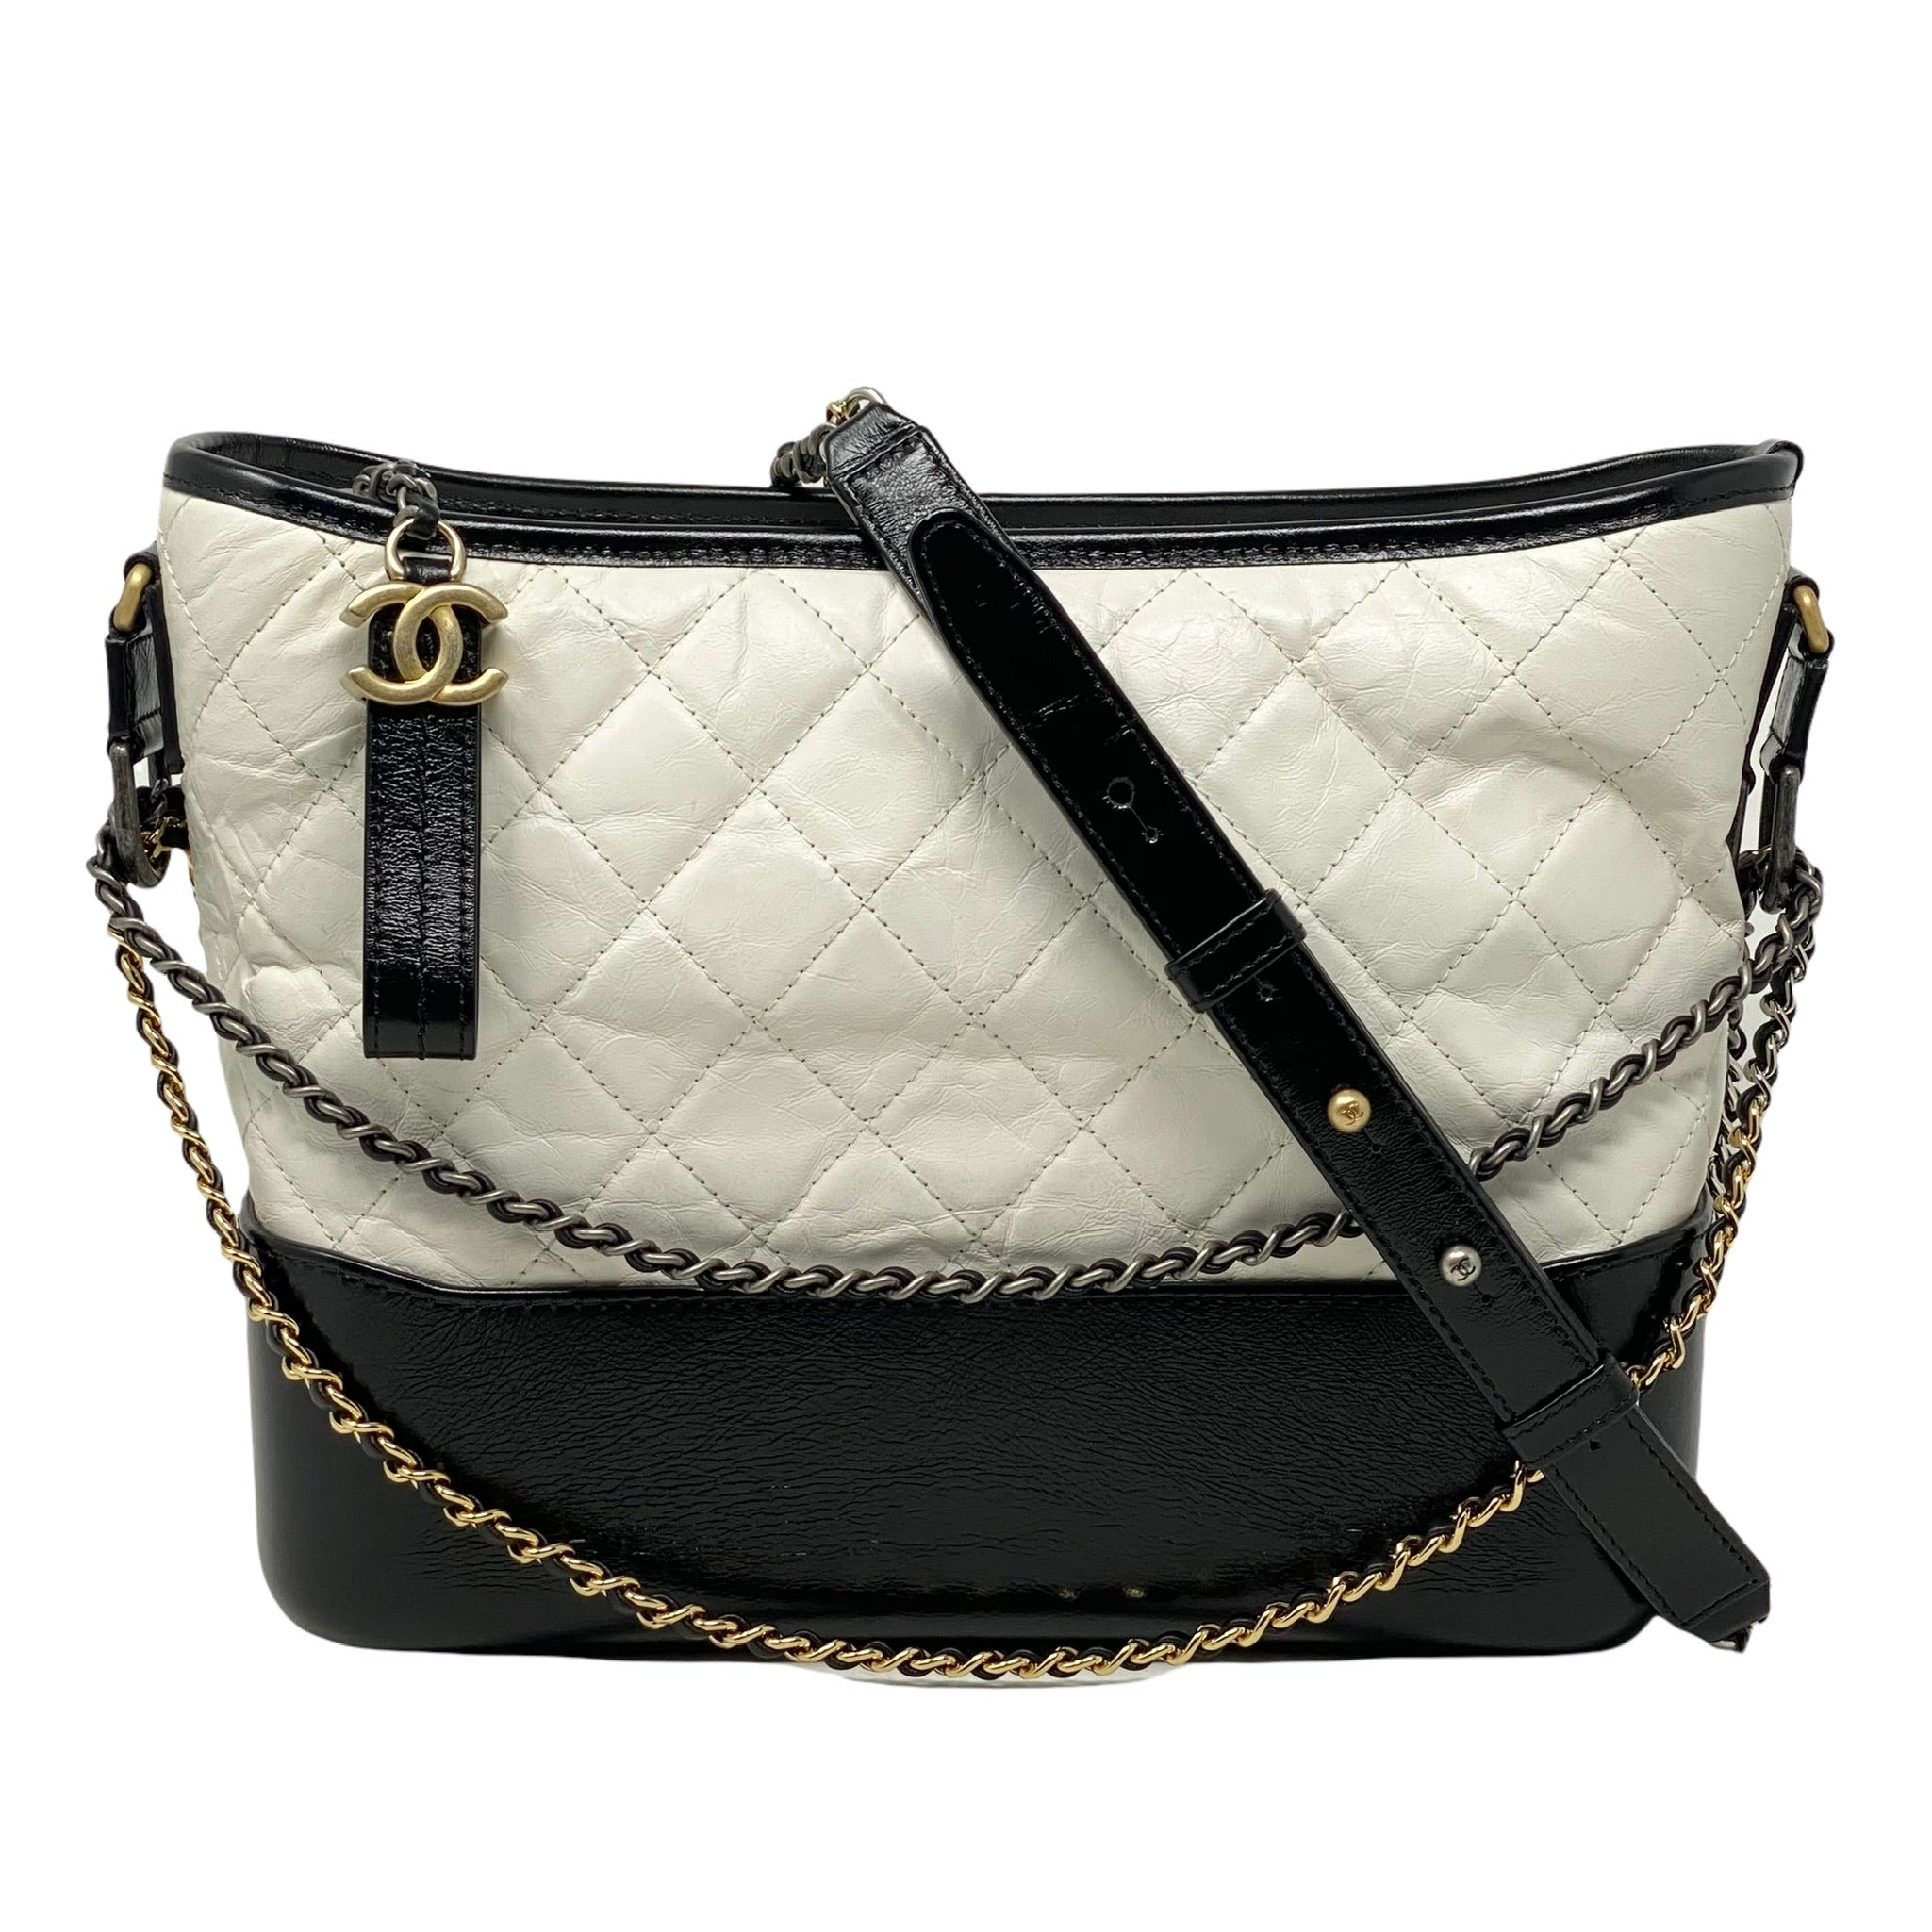 Chanel White Medium Gabrielle Bag